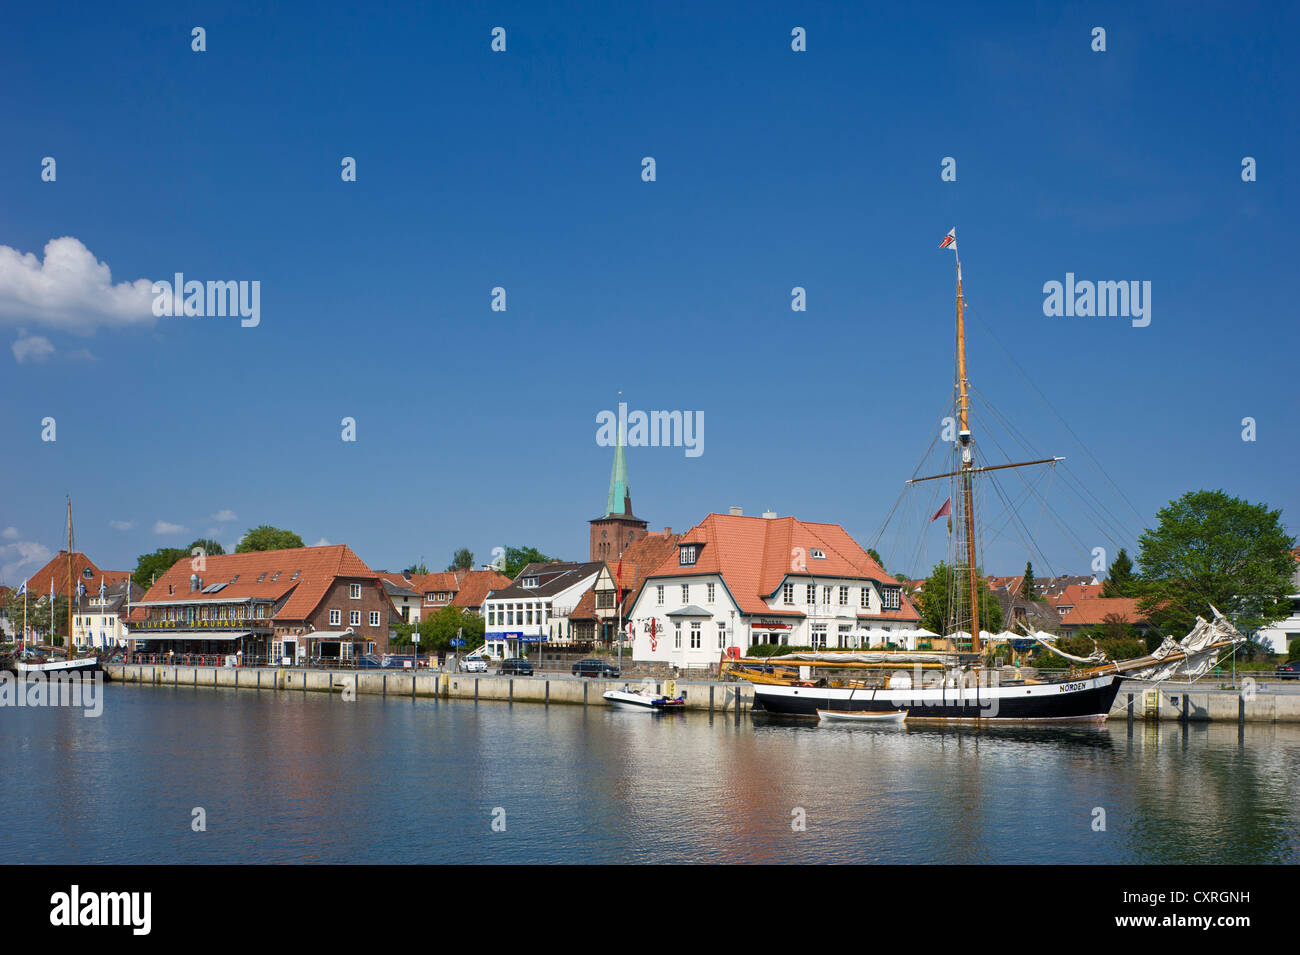 Hafen Sie mit einem historischen Segelschiff, Altstadt, Neustadt in Holstein, Schleswig-Holstein, Deutschland, Europa Stockfoto